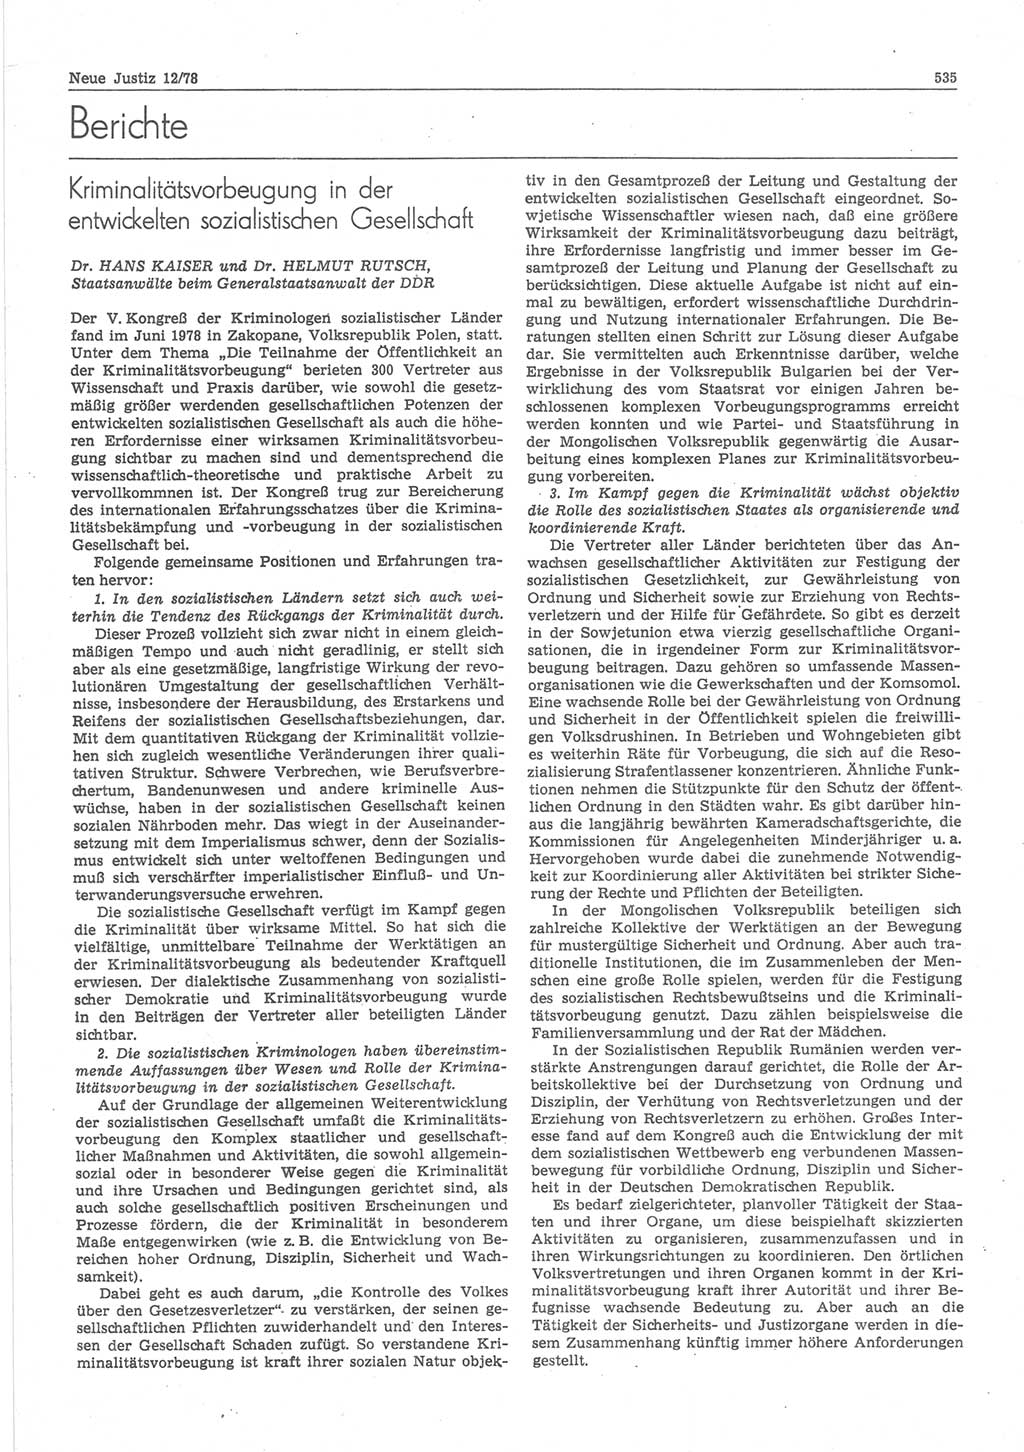 Neue Justiz (NJ), Zeitschrift für sozialistisches Recht und Gesetzlichkeit [Deutsche Demokratische Republik (DDR)], 32. Jahrgang 1978, Seite 535 (NJ DDR 1978, S. 535)